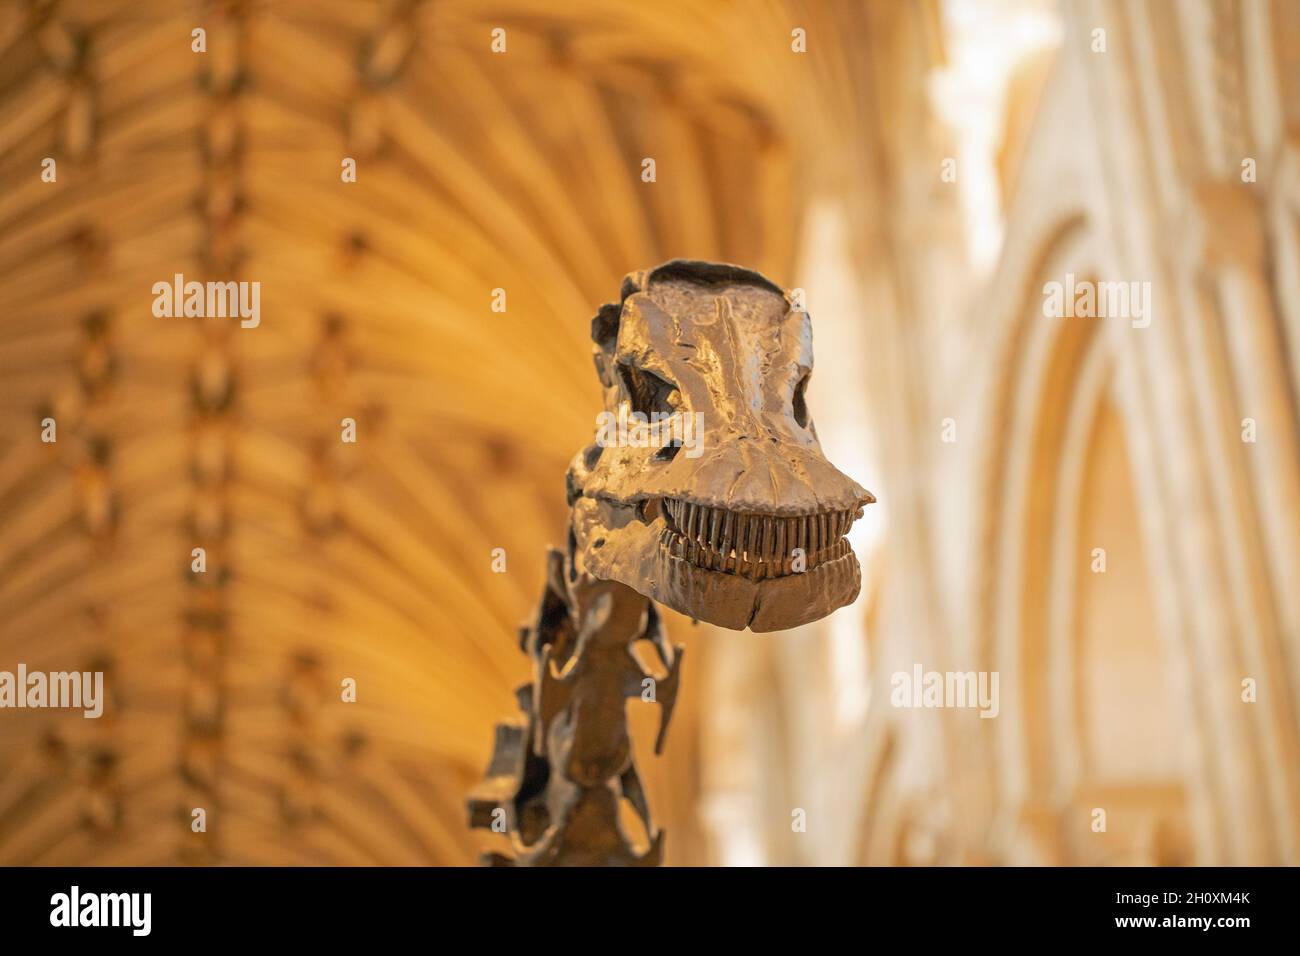 Testa e collo superiore o vertebre cervicali. "Dippy". Diplodocus carnegie, sauropode, dinosauro, rivelando pettini come denti, dentizione, abilitazione anime Foto Stock